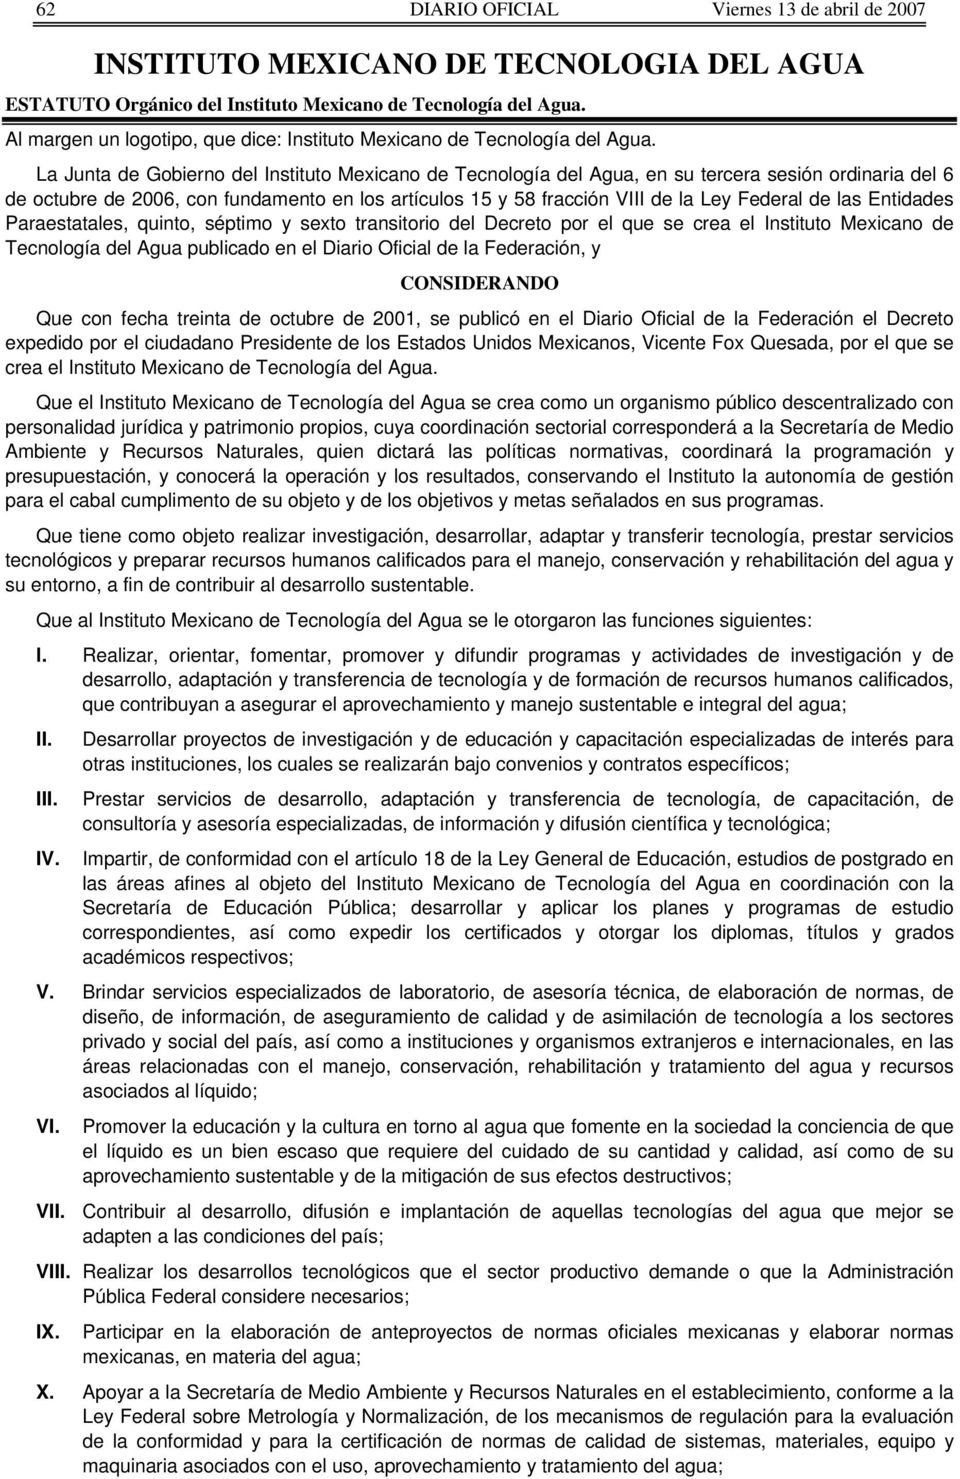 La Junta de Gobierno del Instituto Mexicano de Tecnología del Agua, en su tercera sesión ordinaria del 6 de octubre de 2006, con fundamento en los artículos 15 y 58 fracción VIII de la Ley Federal de